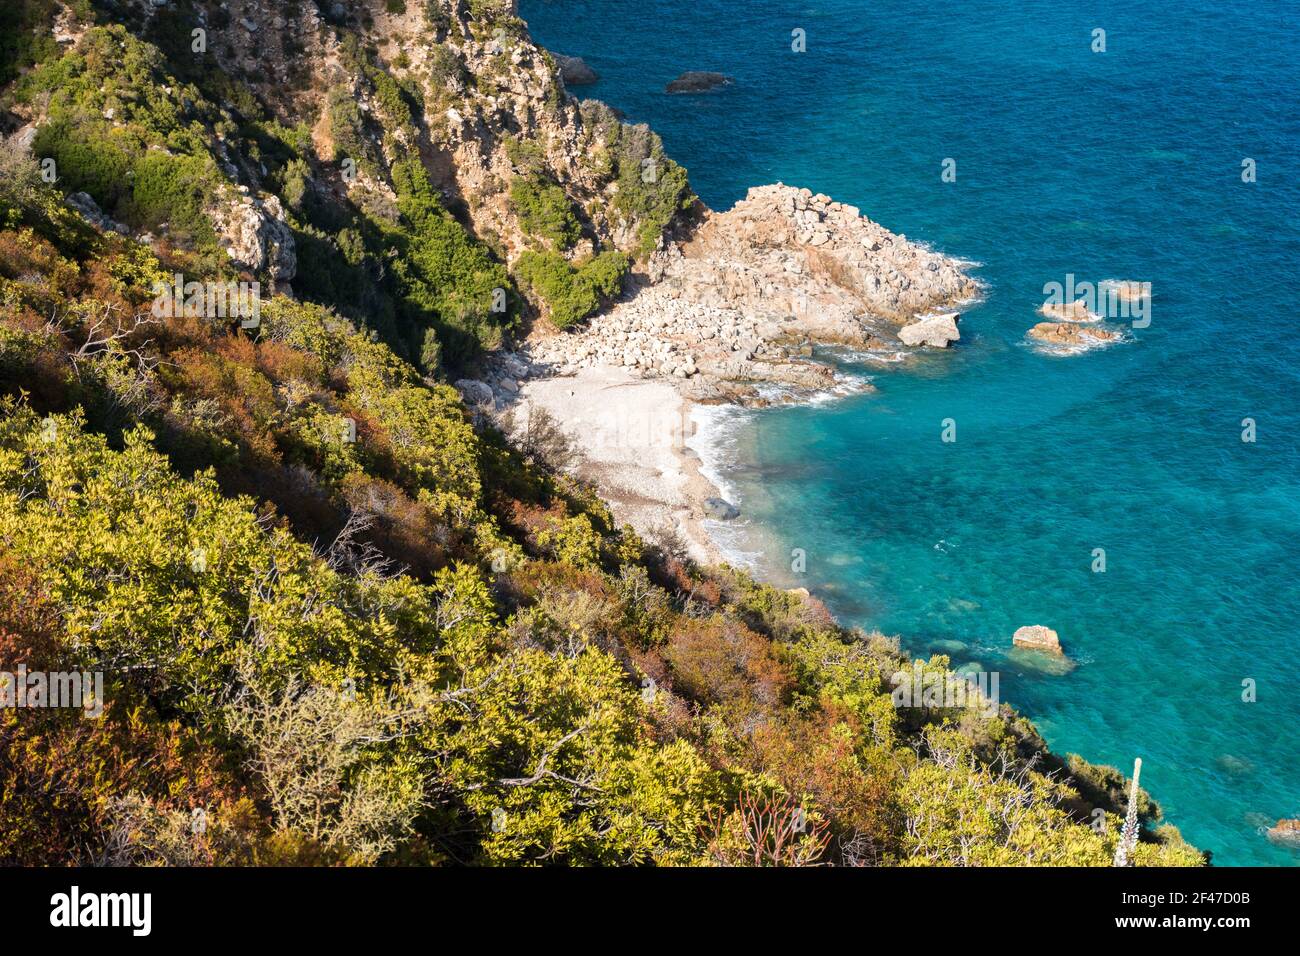 The coastline near Santa Maria Navarrese and the small bay called Cala Fenile (Sardinia, Italy) Stock Photo